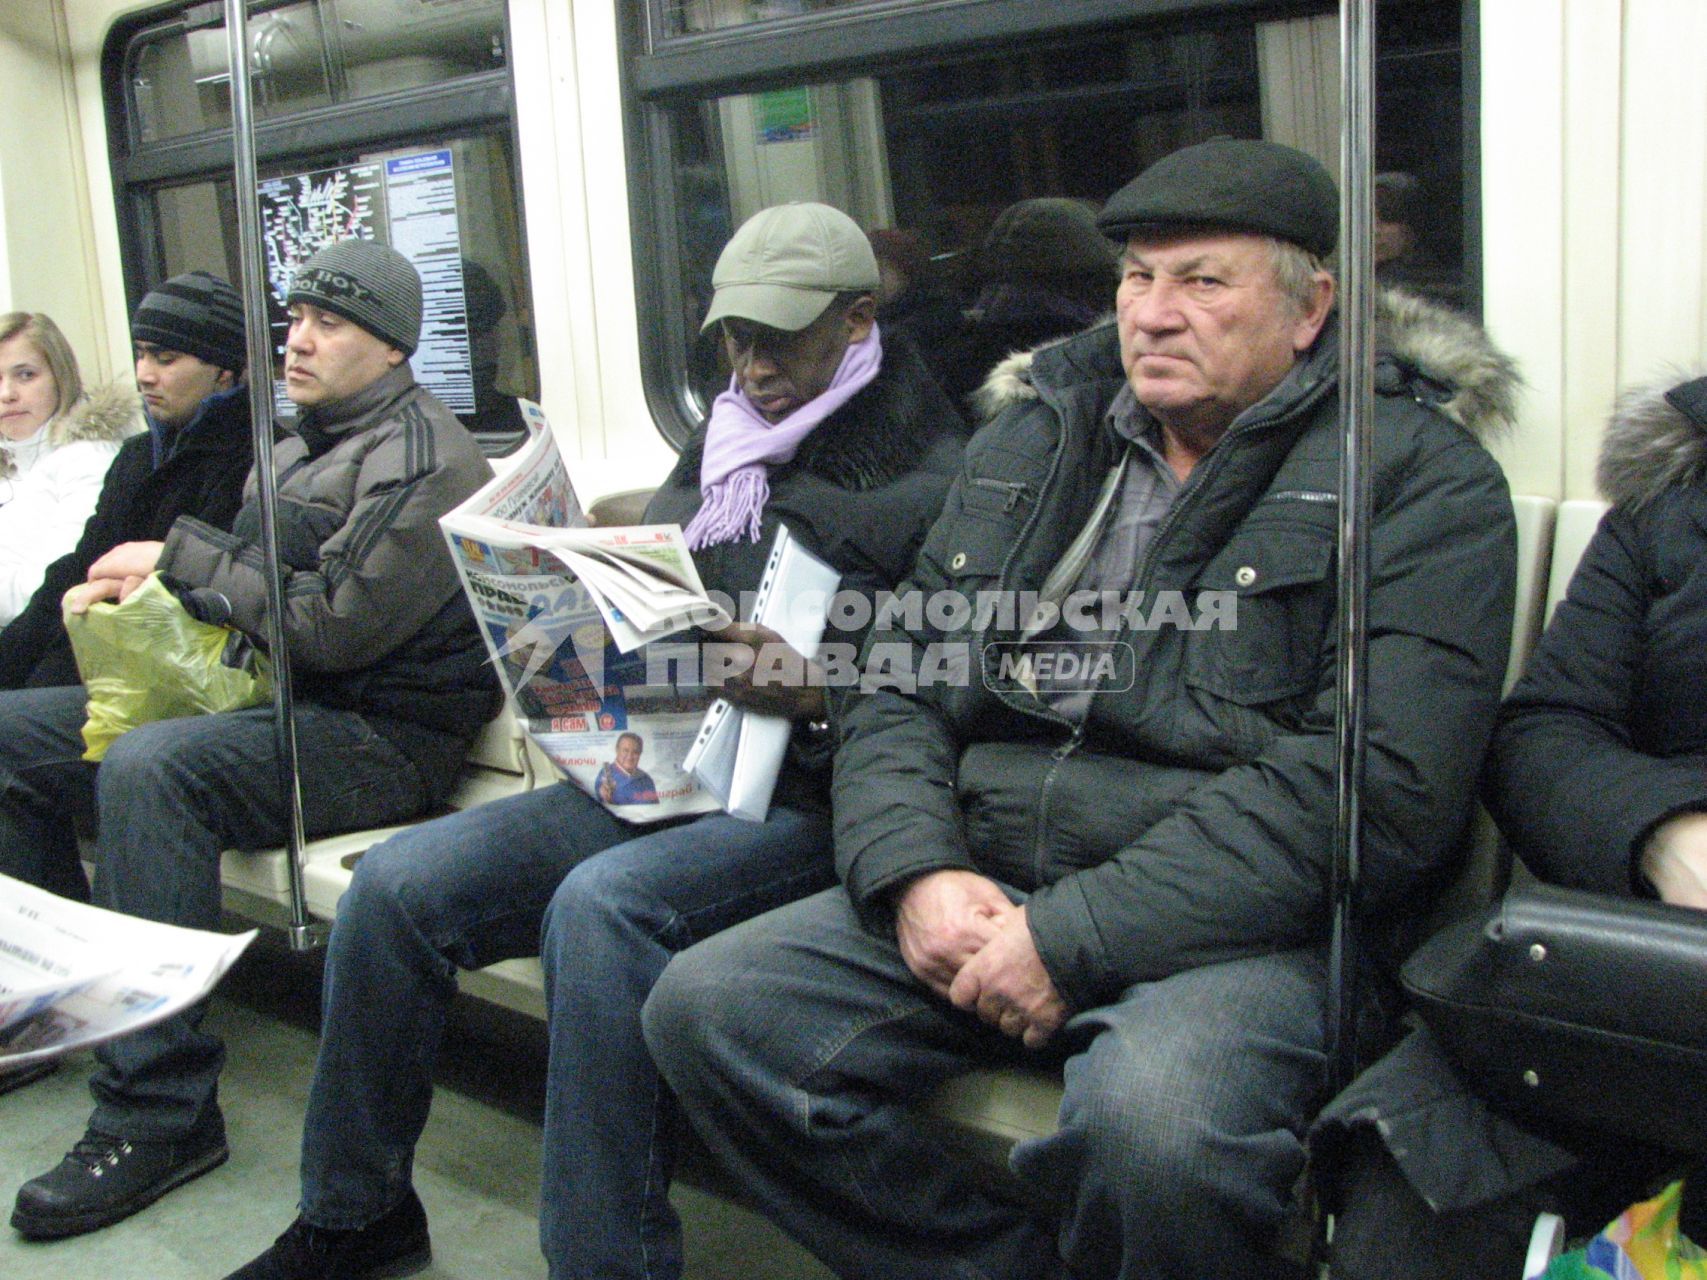 Человек негроидной расы читает газету Комсомольская правда едя в метро.